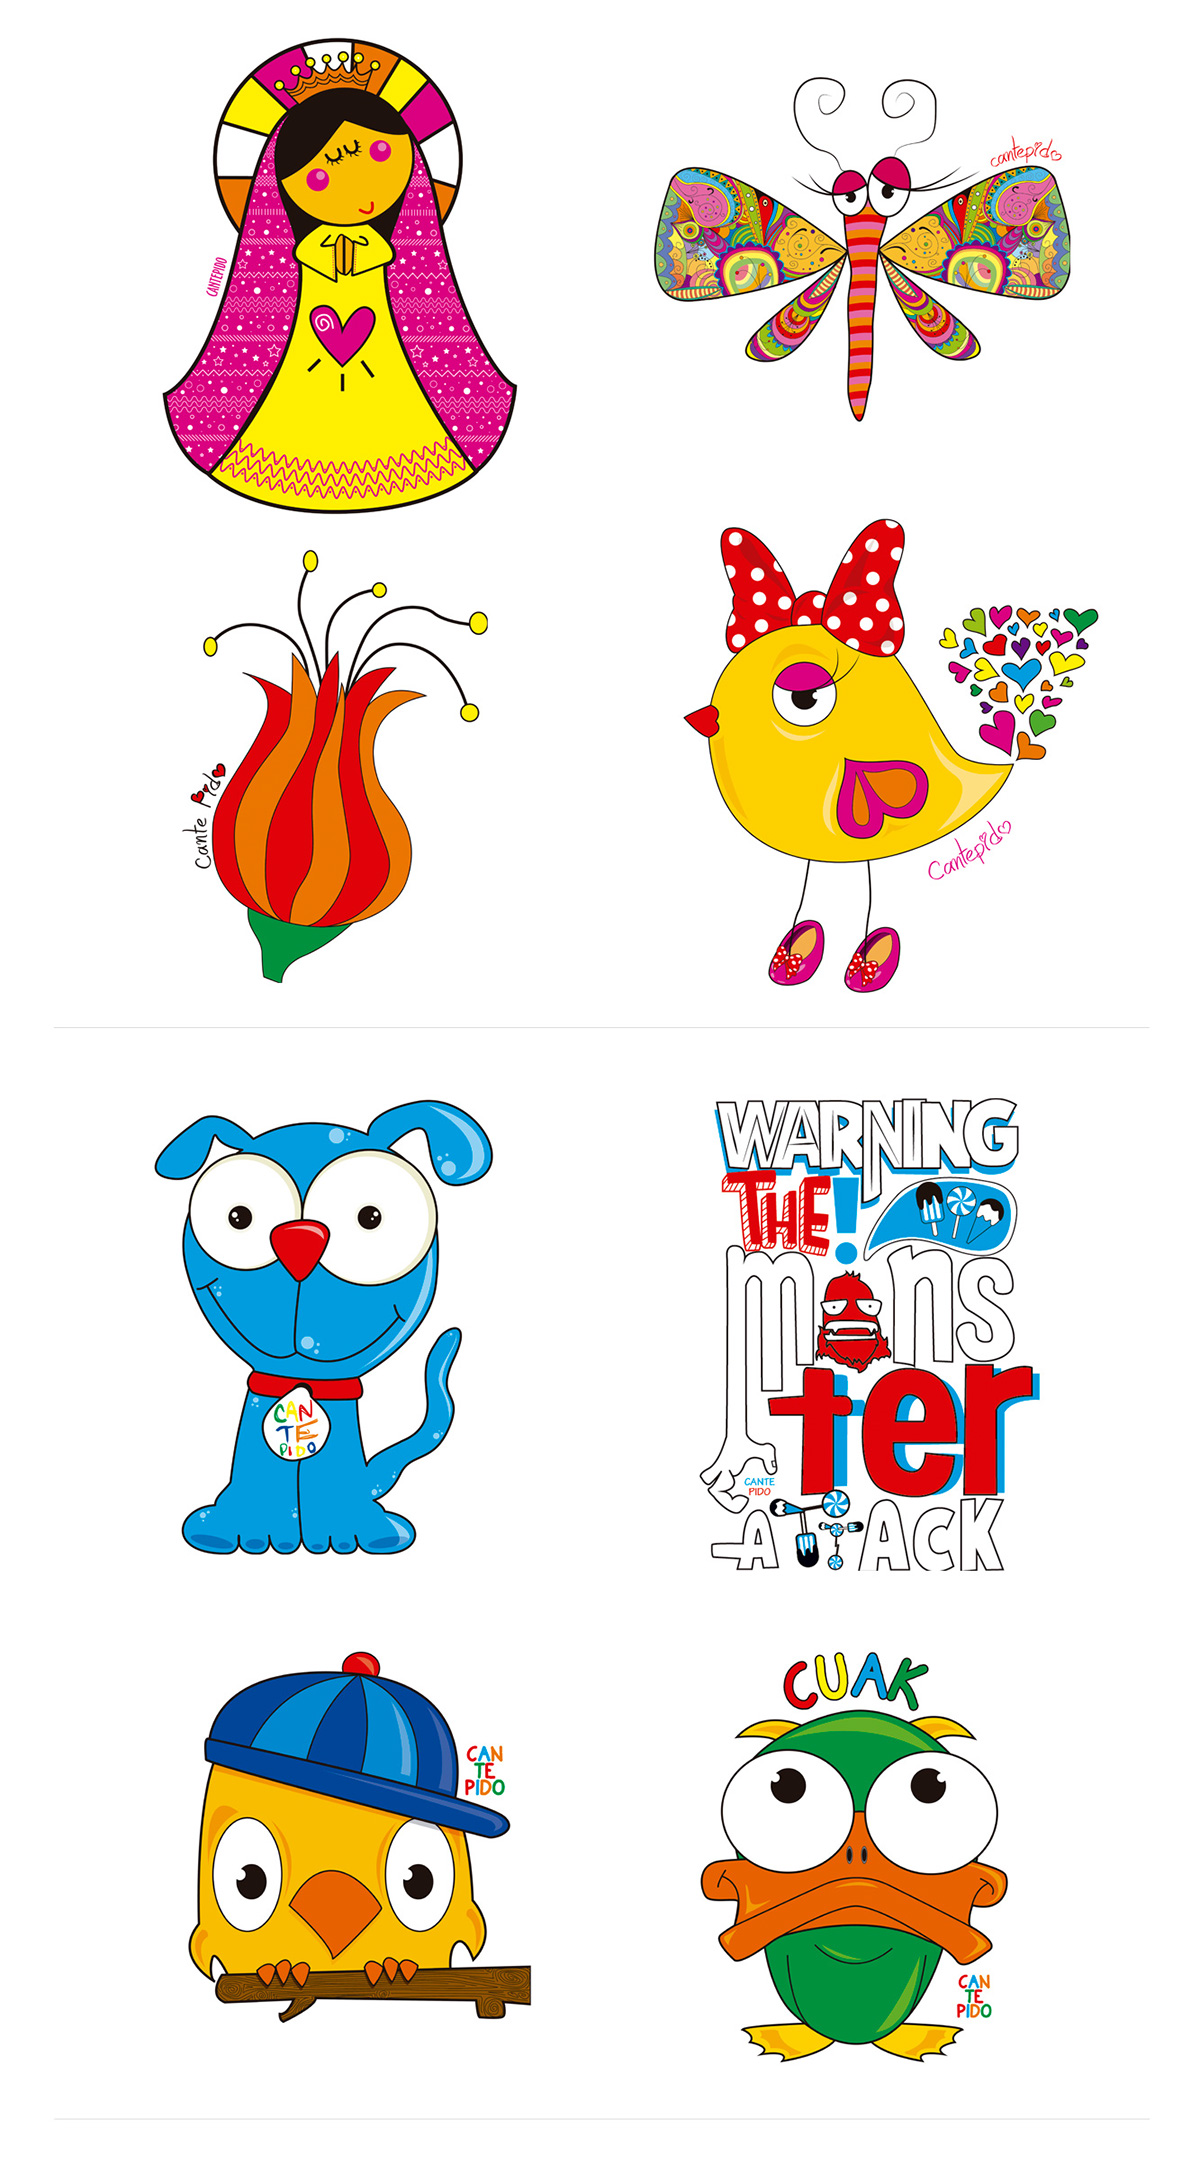 indumentaria infantil indumentaria infantil Estampas estampado bordado Ropa niños diseño ilustracion dibujos color